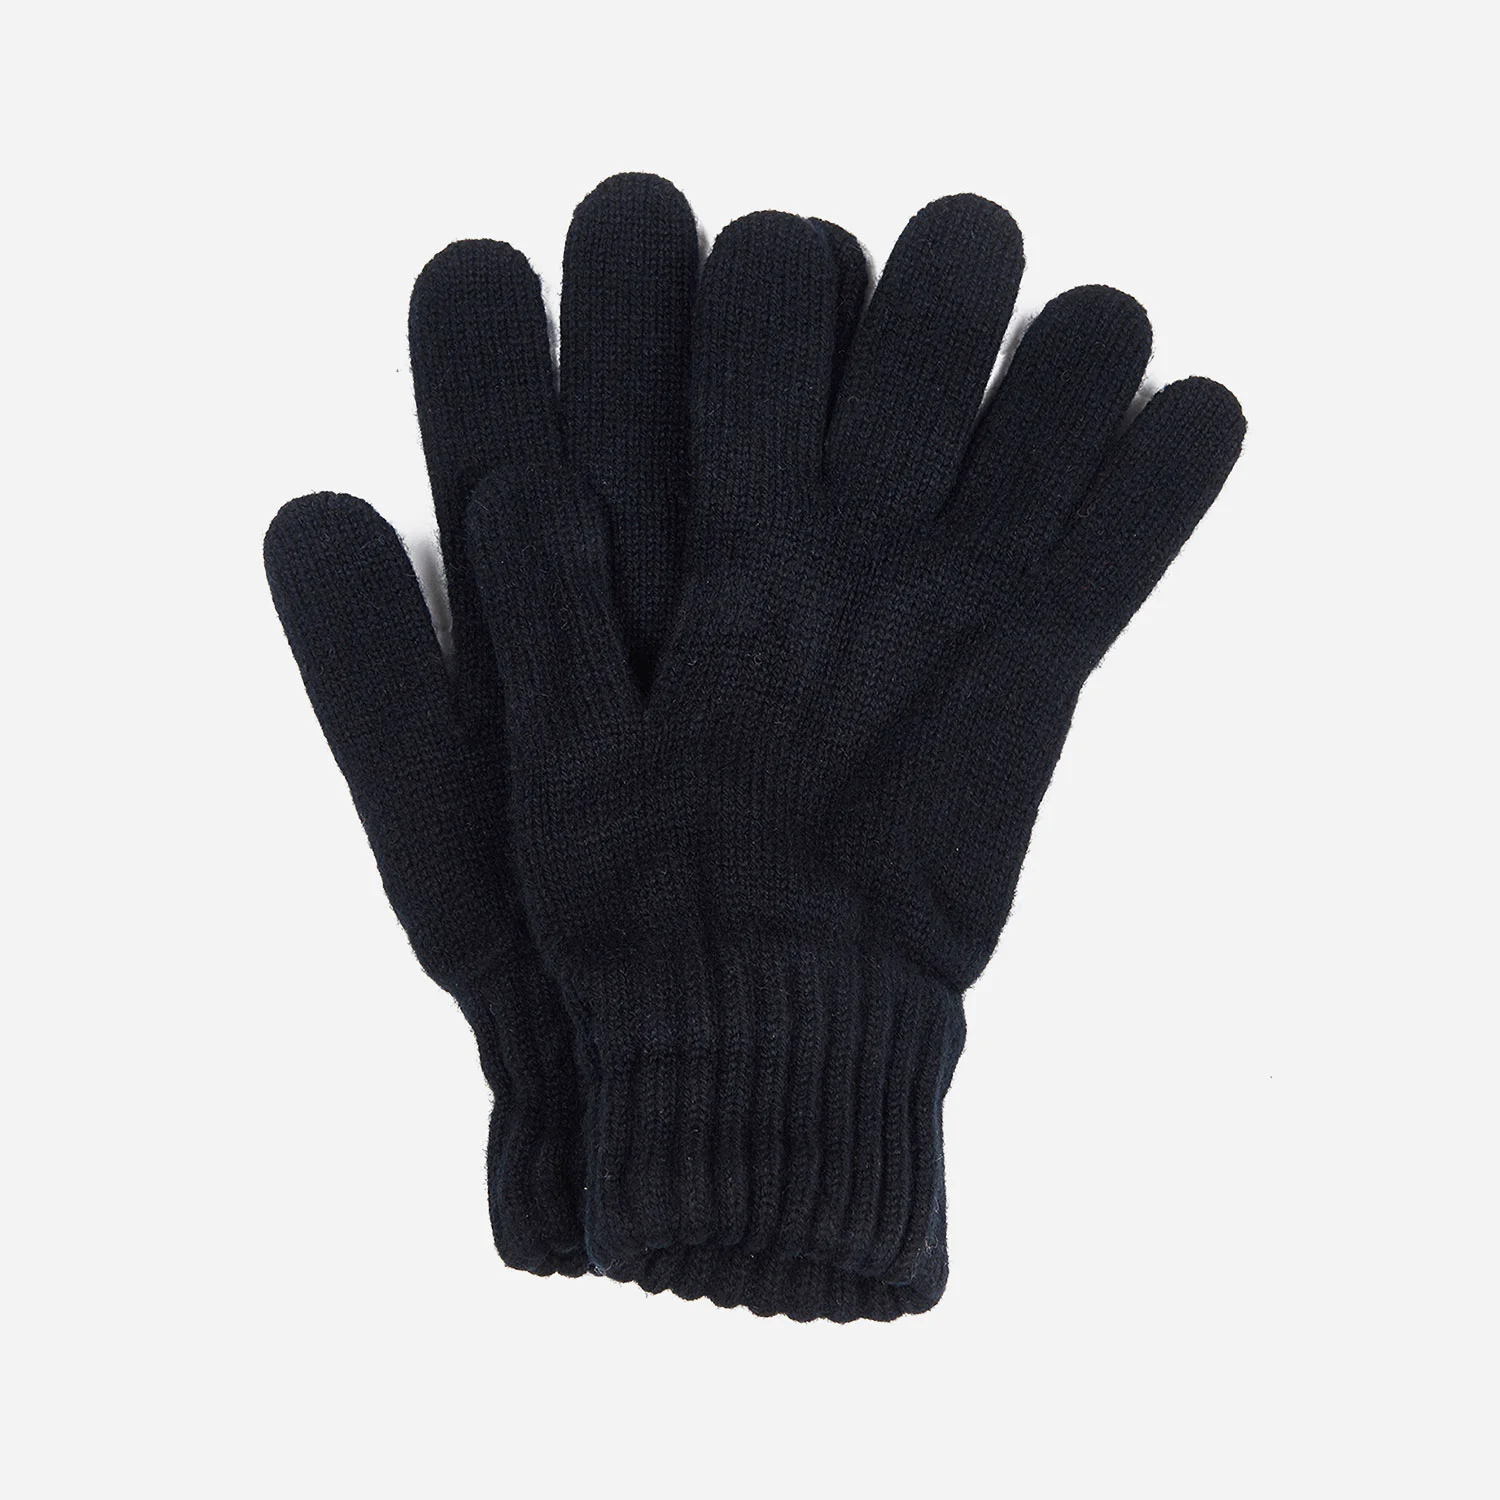 Barbour Lambswool Glove - Black